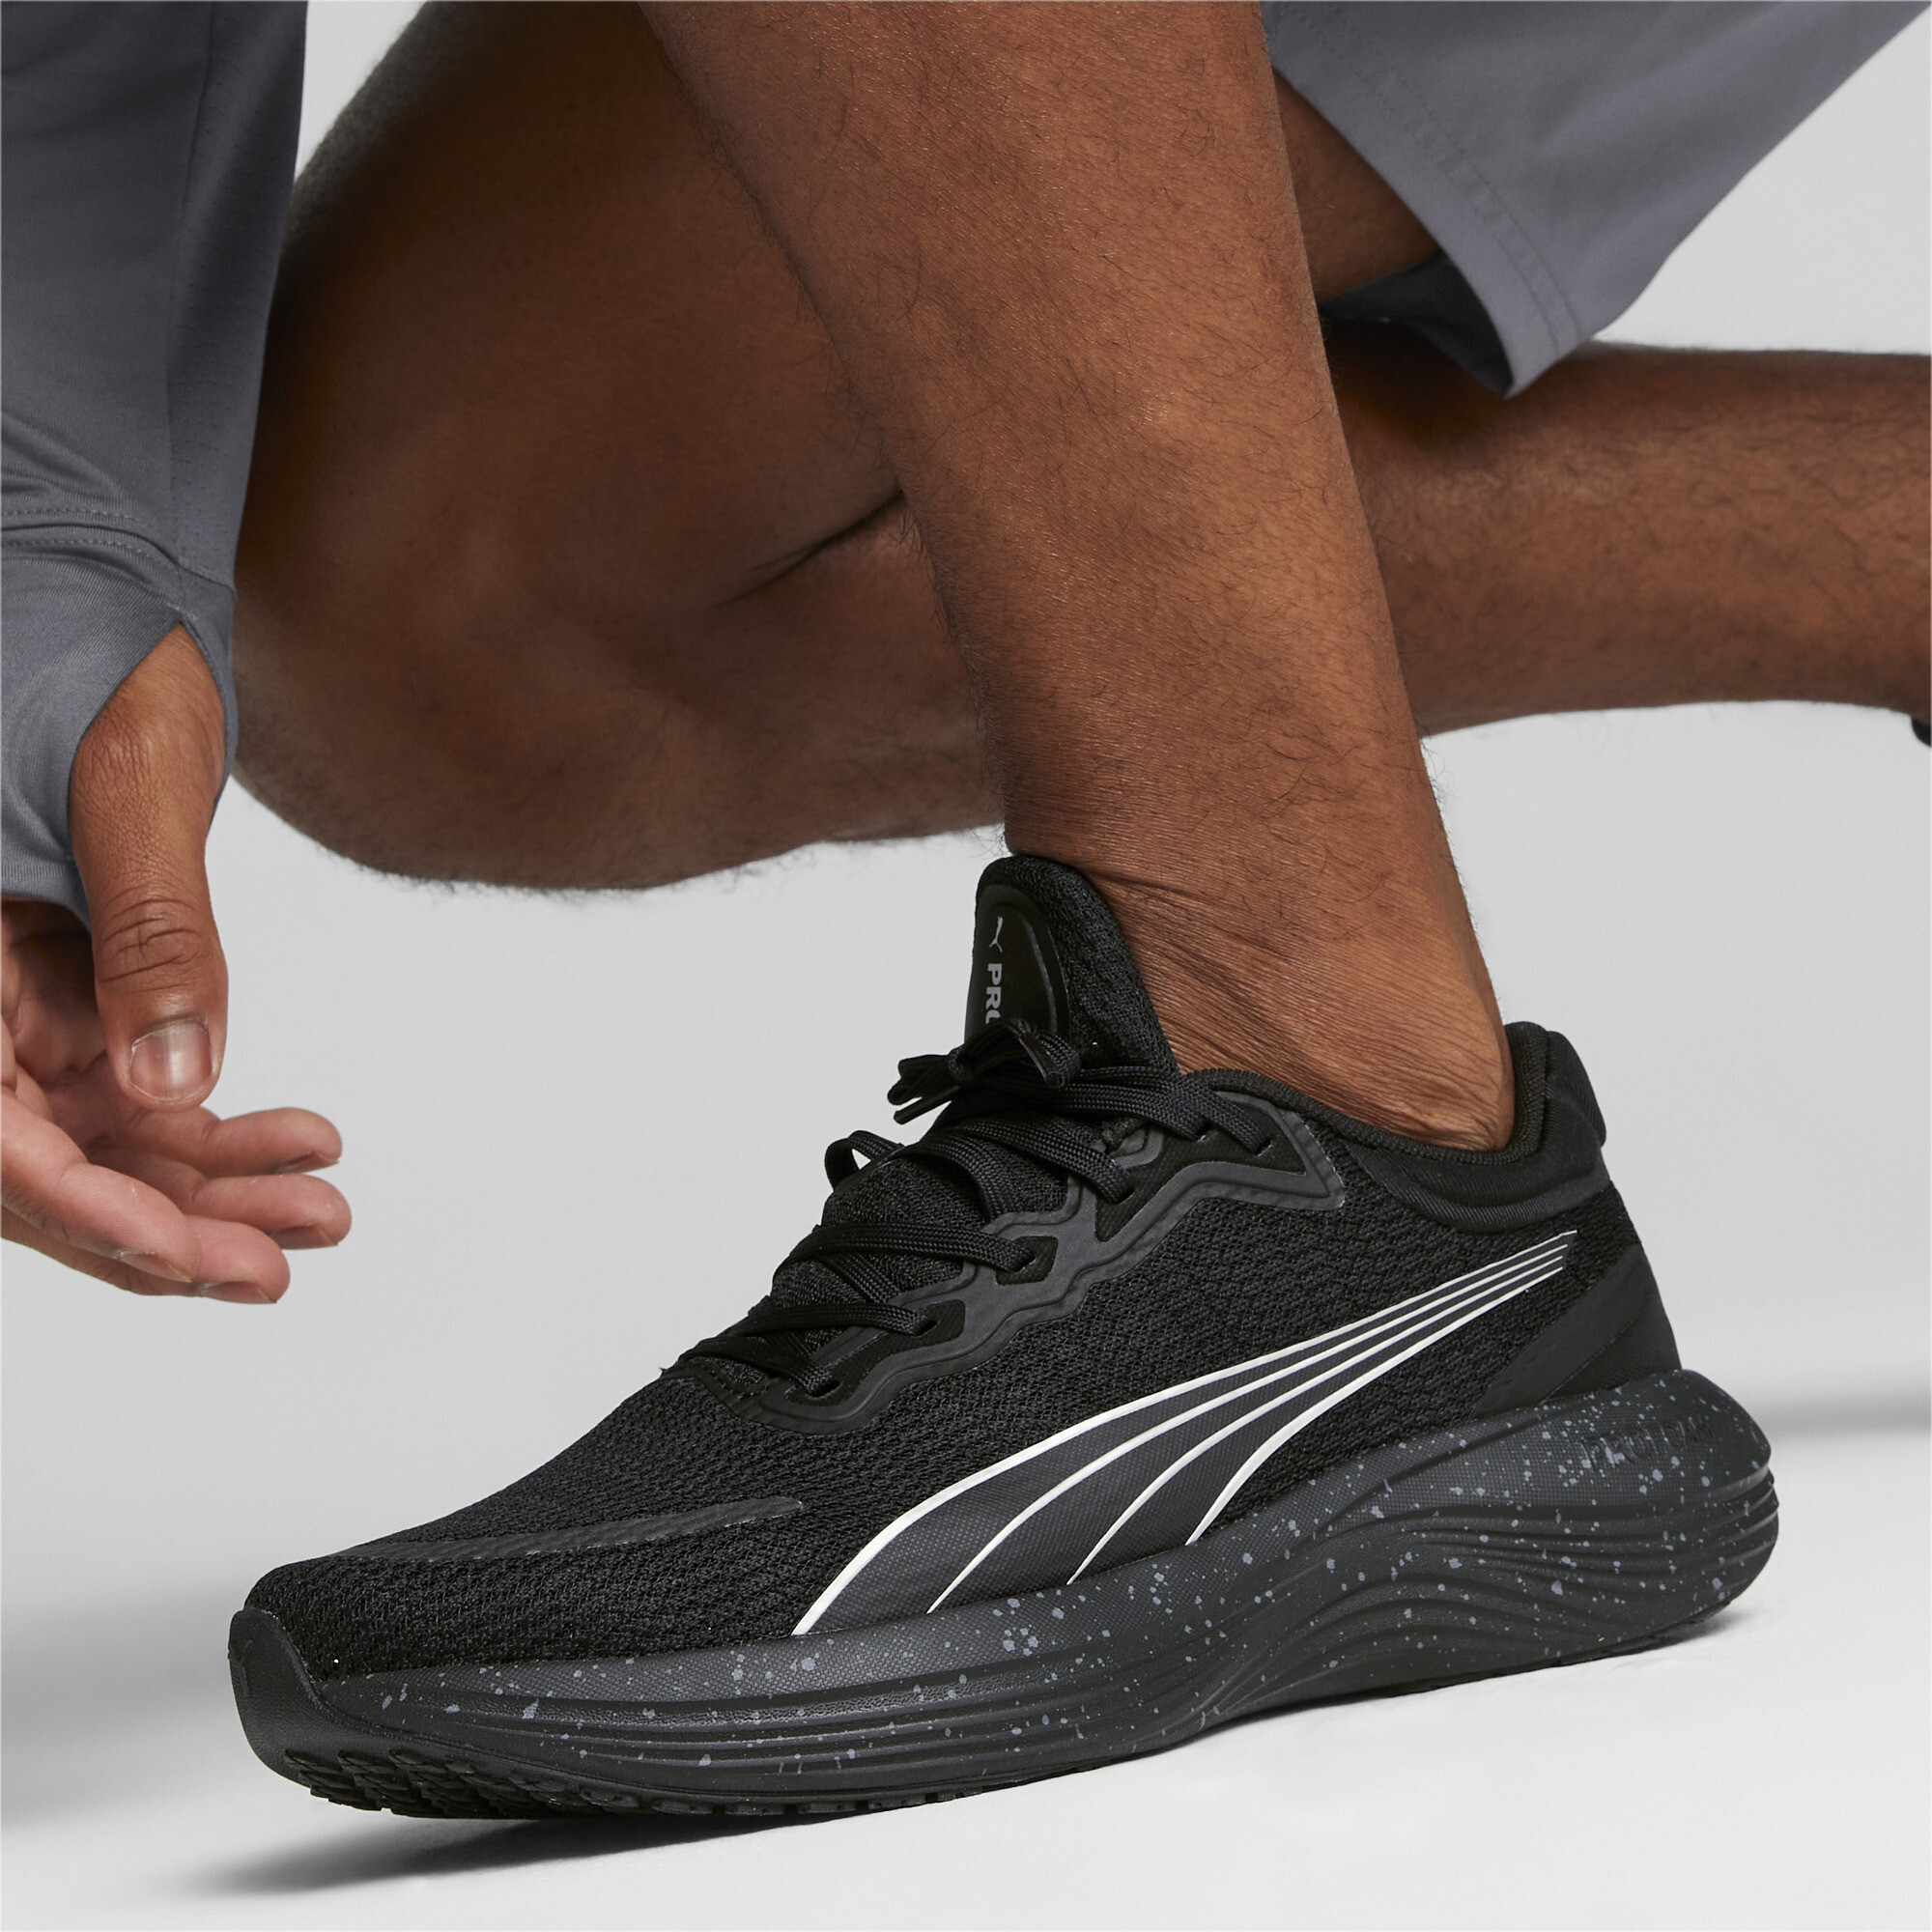 Men's PUMA Scend Pro Running Shoes In Black, Size EU 41